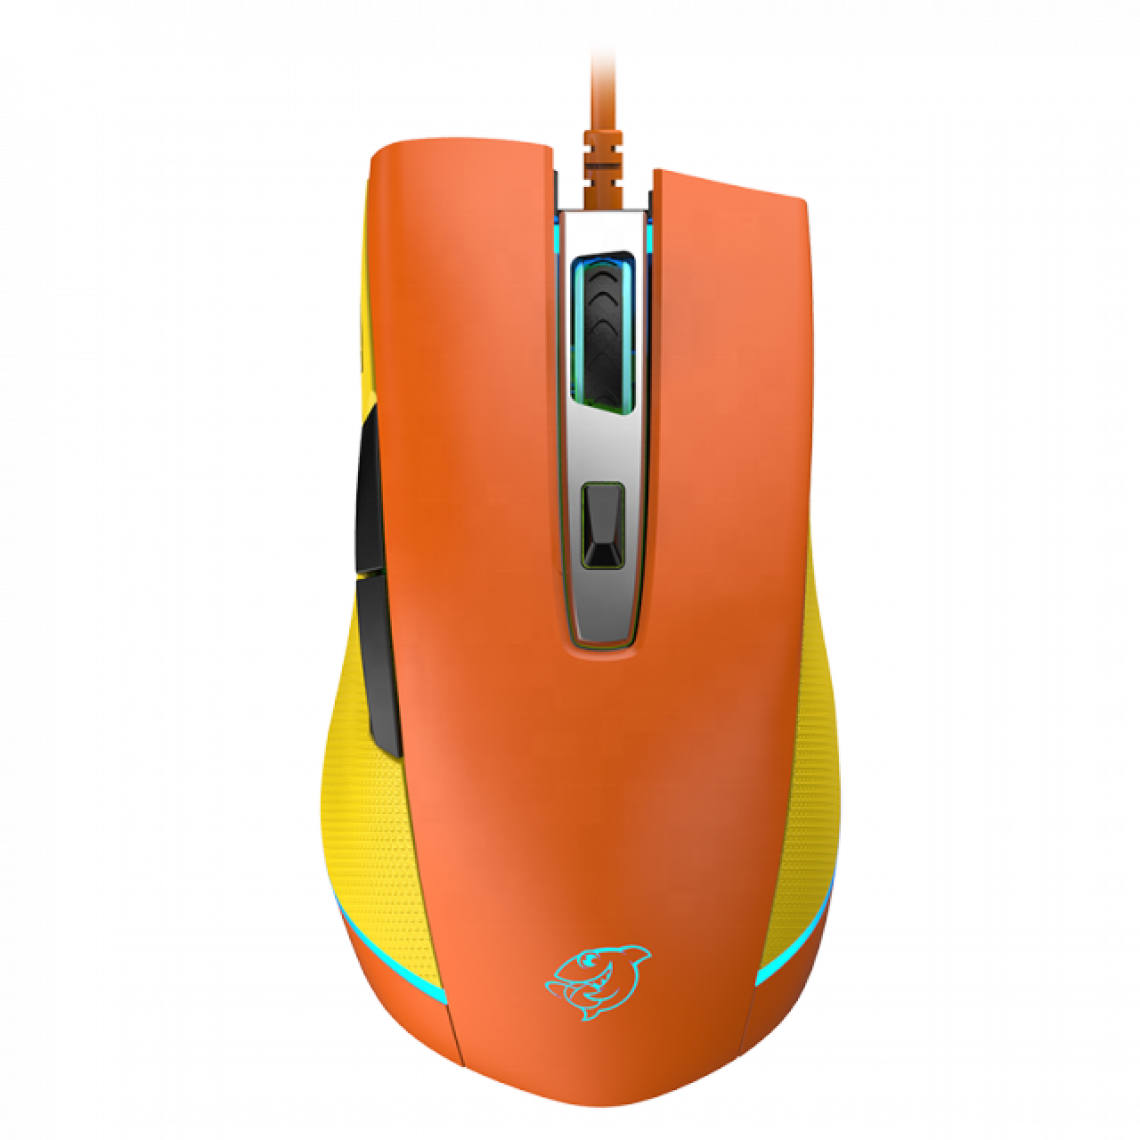 Universal - Souris Gaming Ergonomique Optique Programmable (Noir) PMW3335 Accélération 40G Gamer Cable Mouse PC/Laptop Games | Mouse (Orange) - Souris